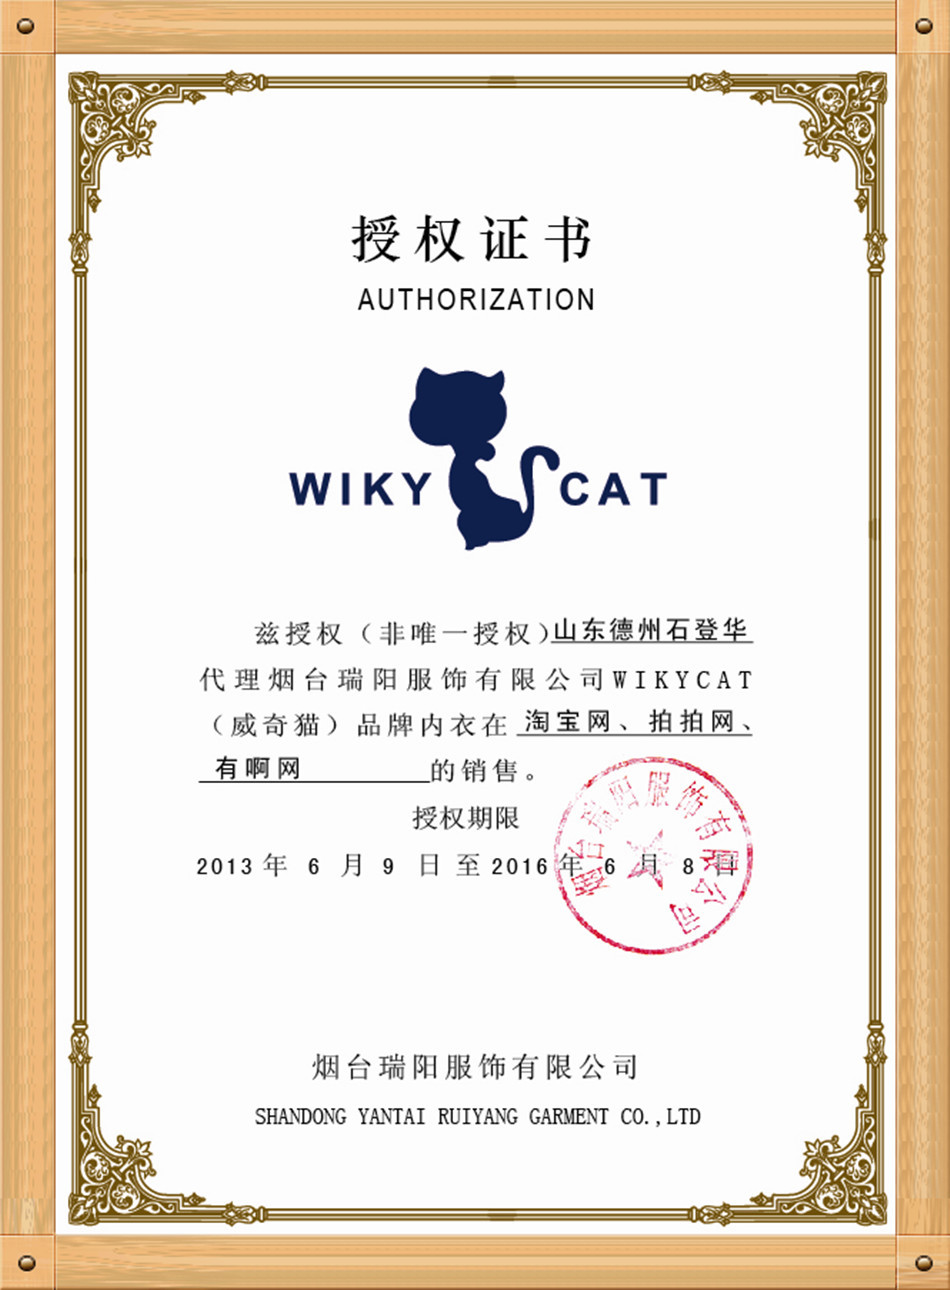 wikycat授权书团网站德州_副本950